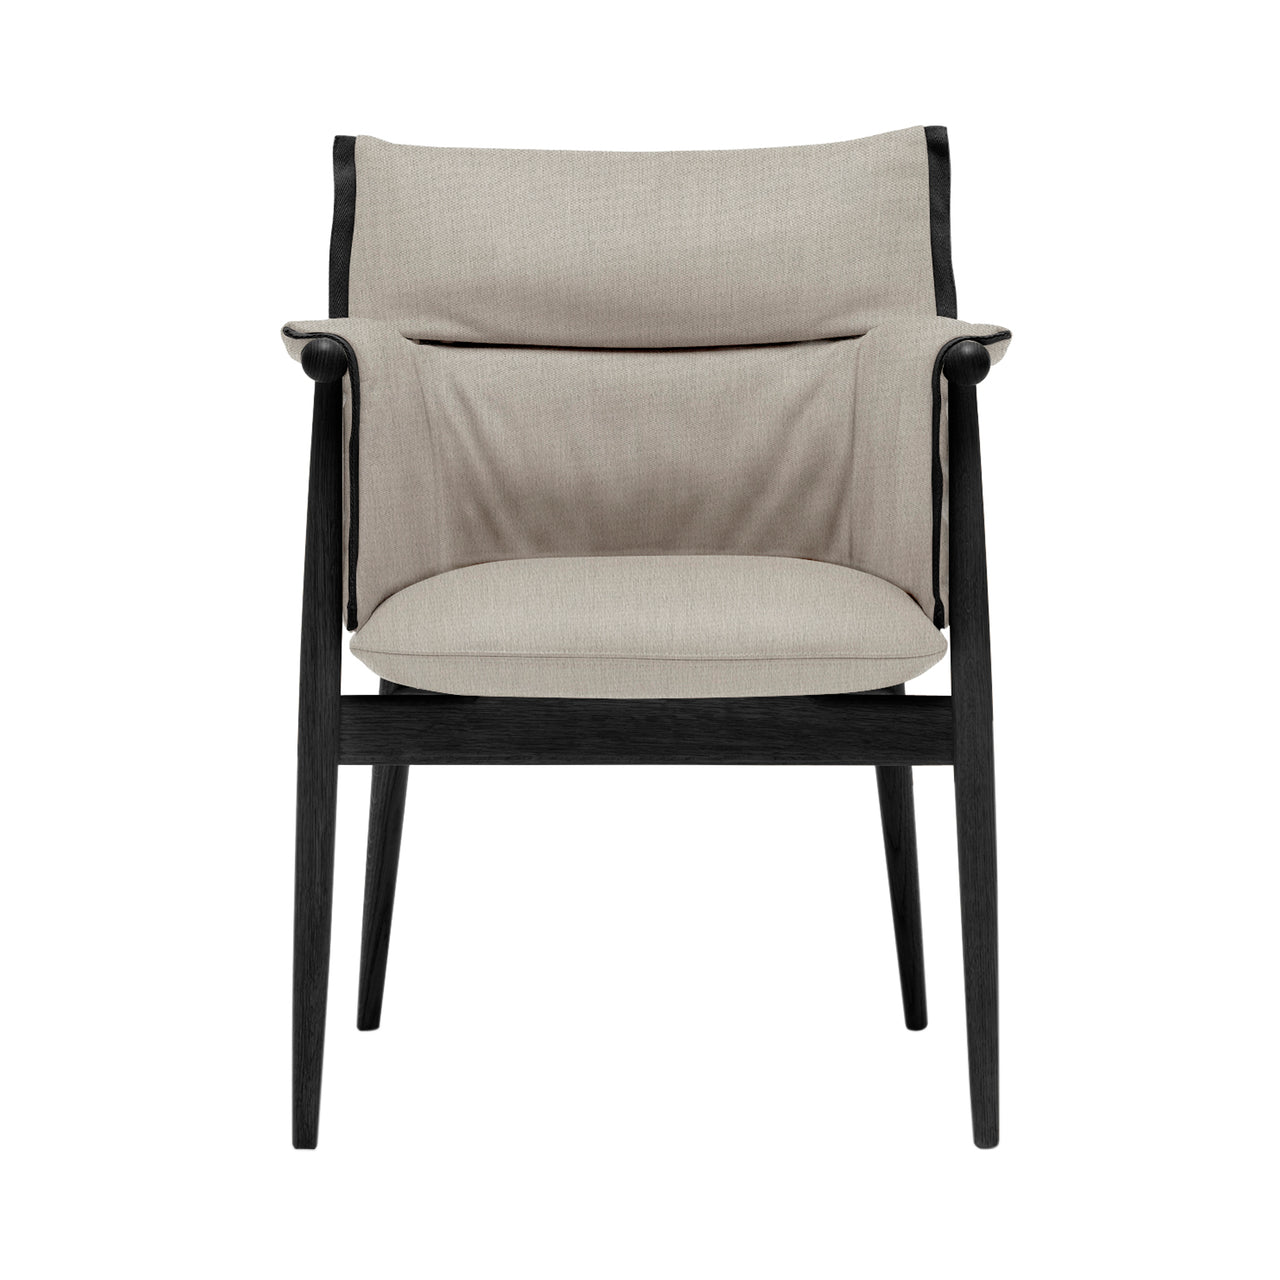 E005 Embrace Armchair: Black Edging Strip + Black Oak